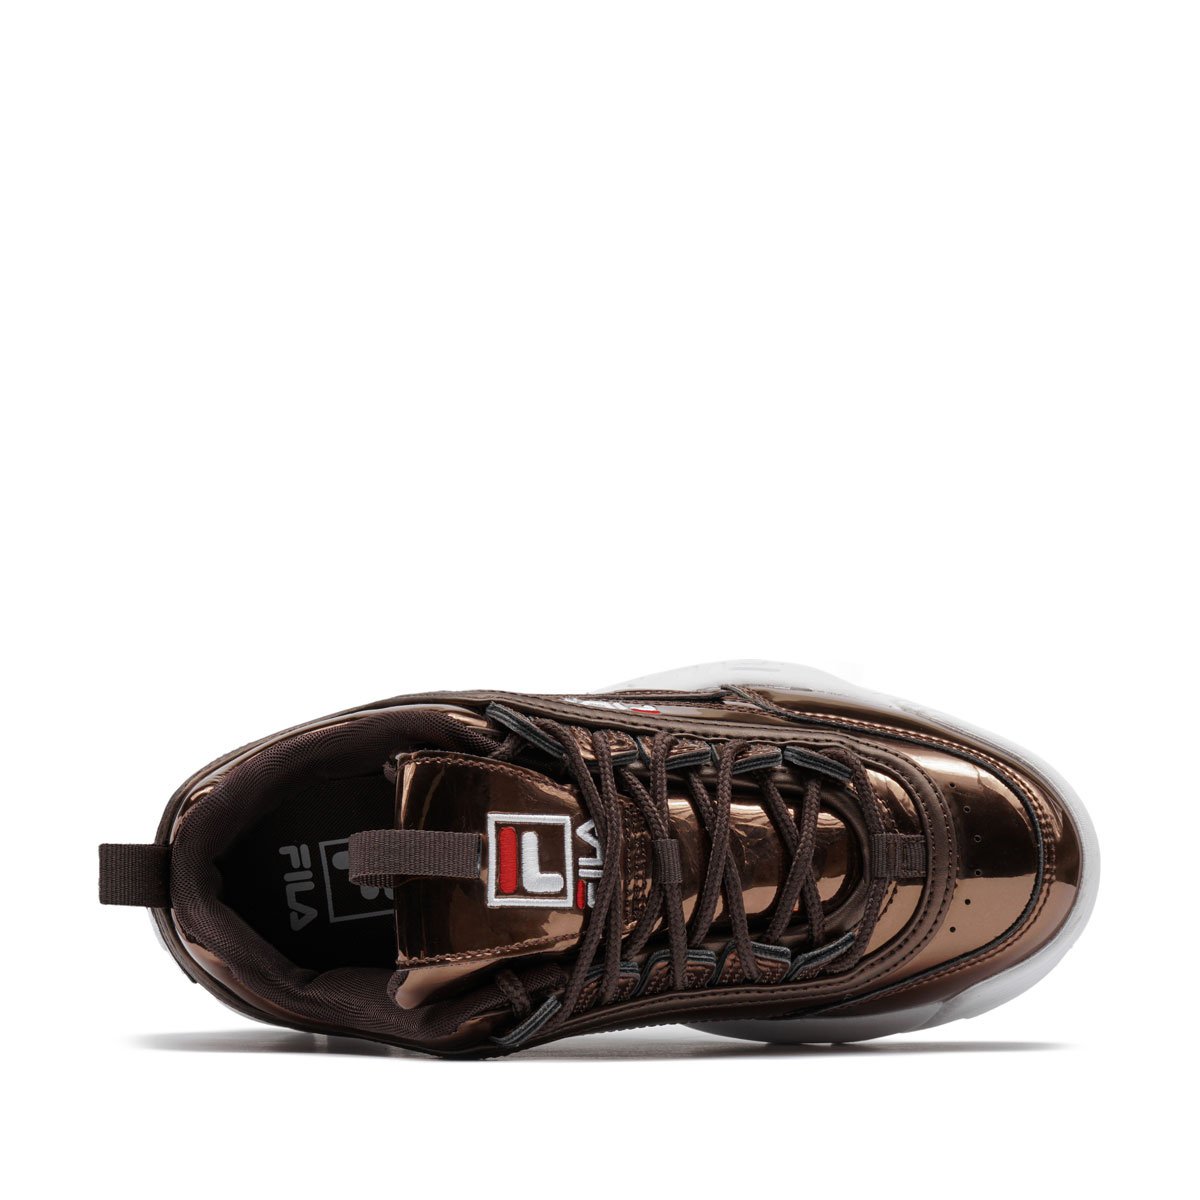 Fila Disruptor F Low Дамски спортни обувки 1011019-31A